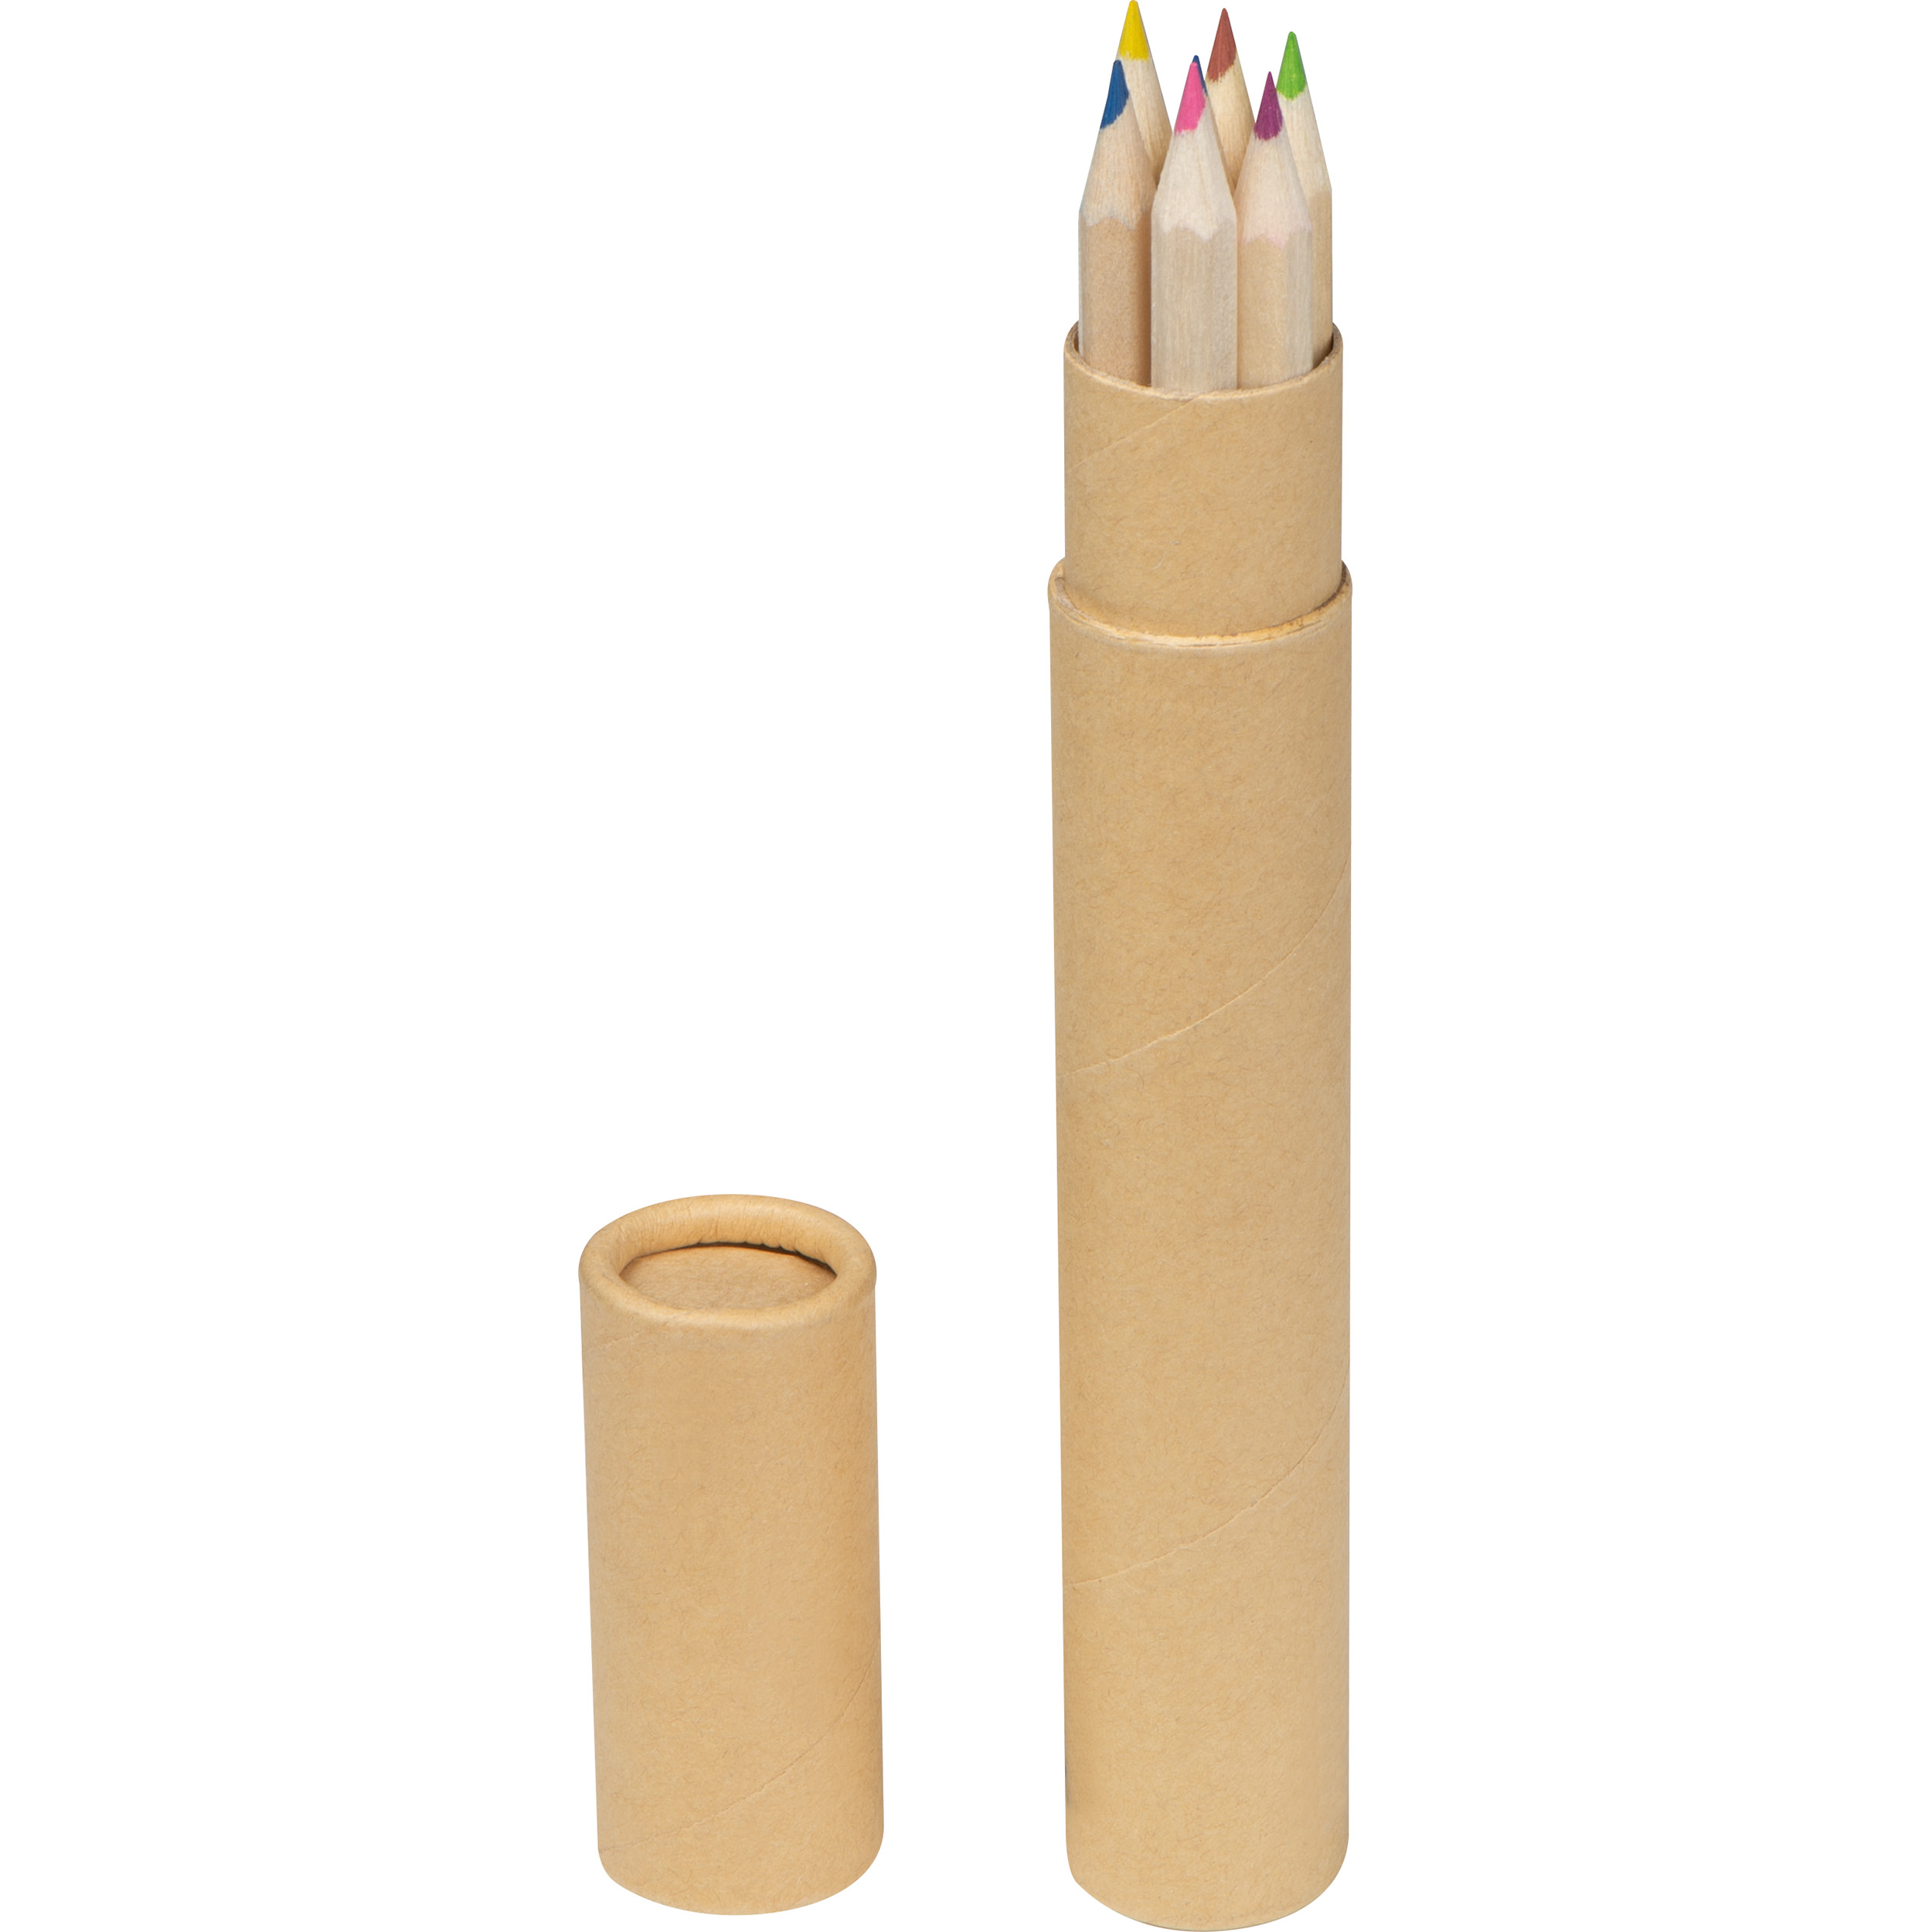 Set de 7 lápices de colores.